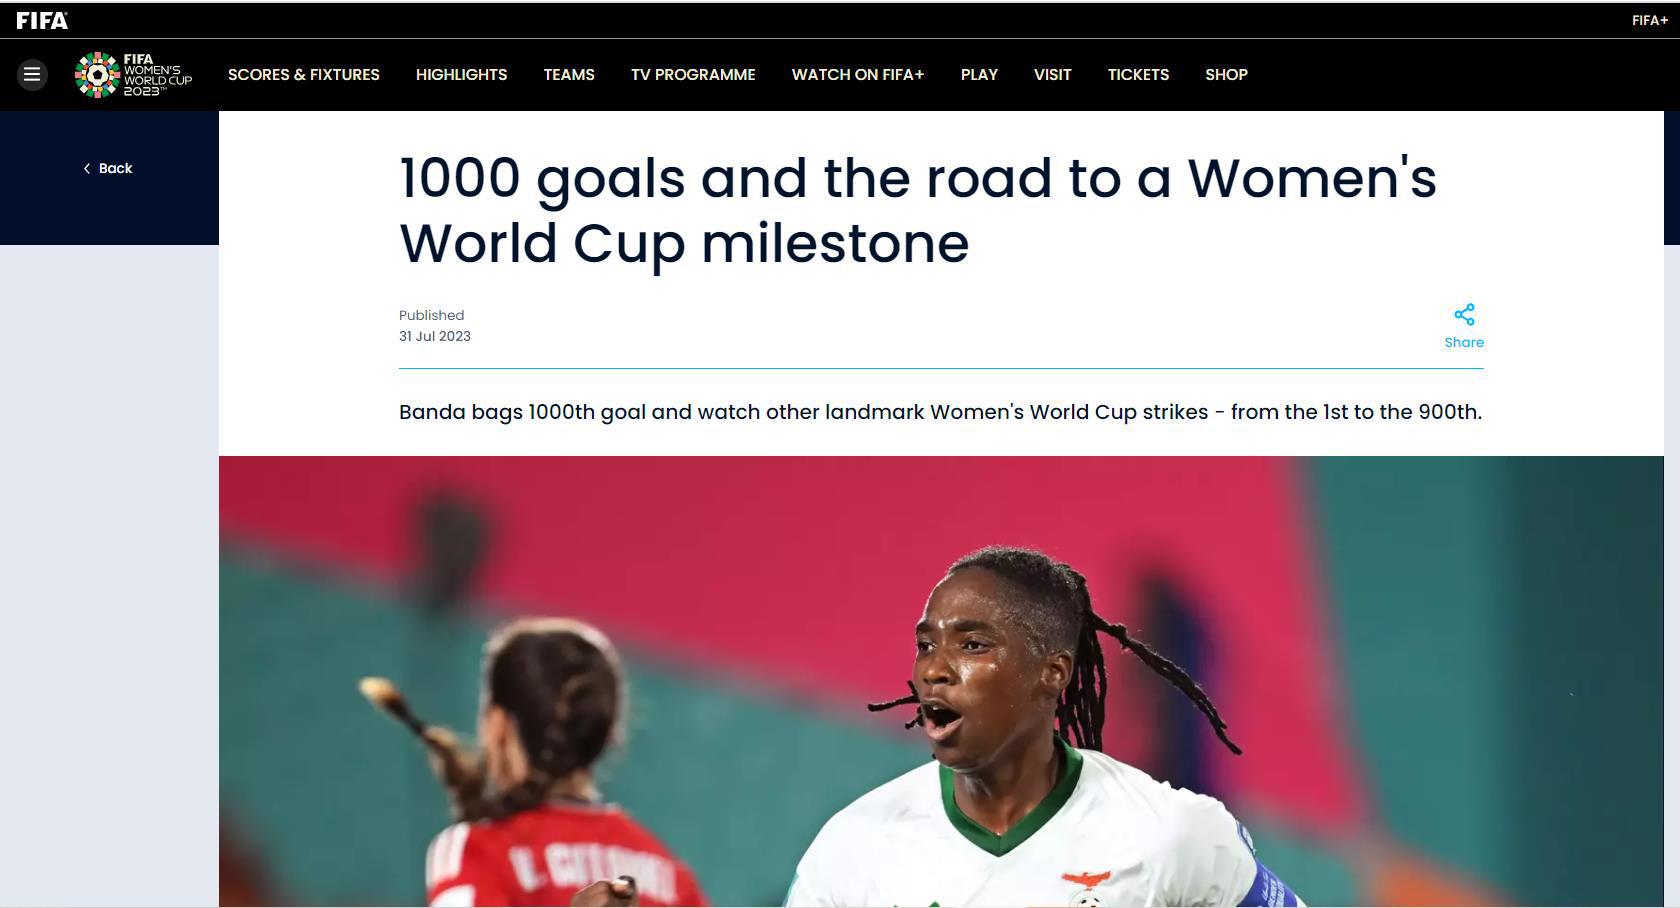 女足世界杯第1000球诞生 进球者效力于上海队